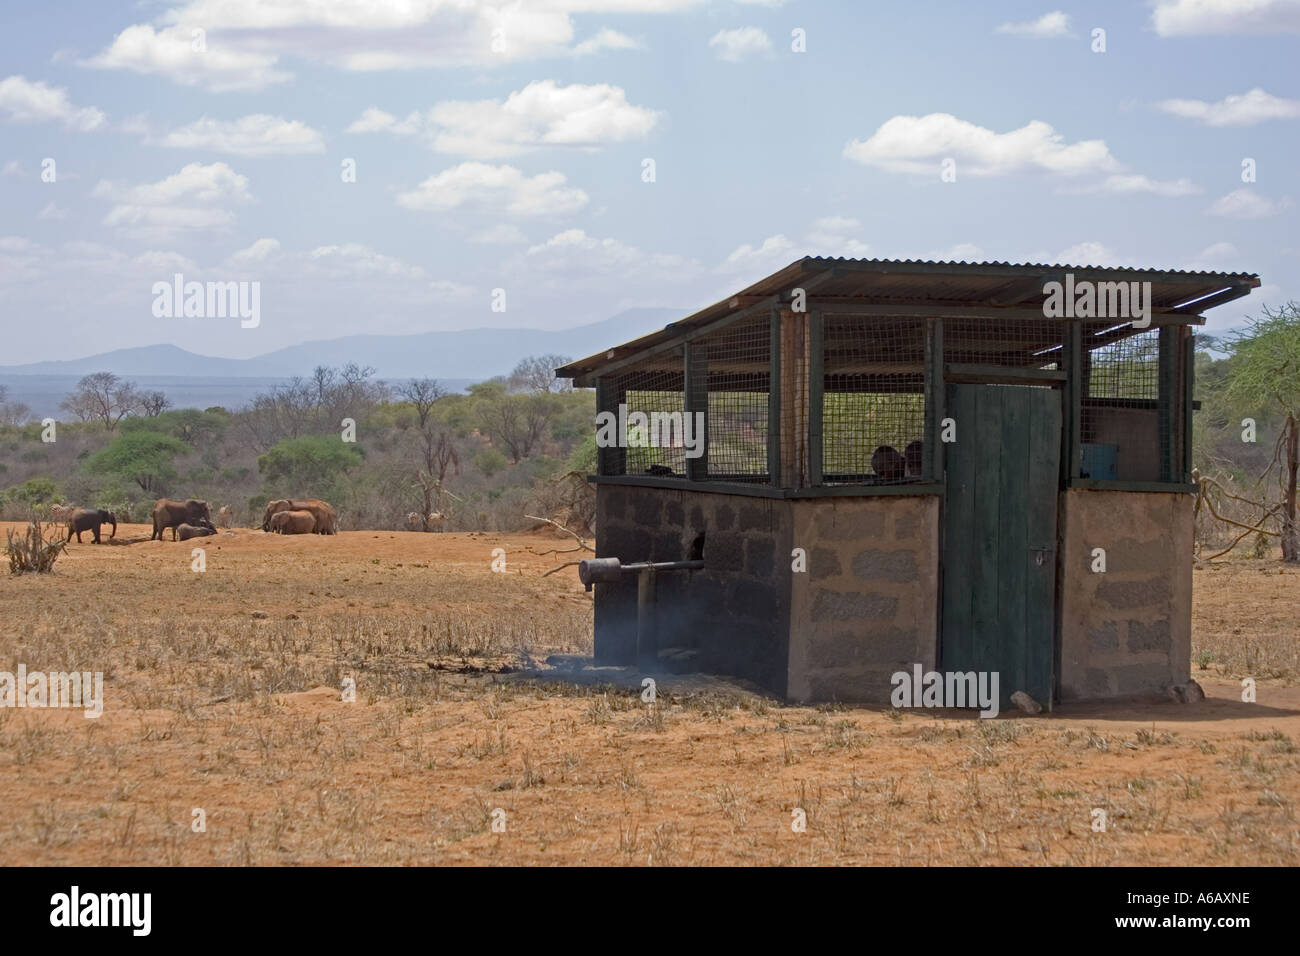 Maison de la pompe d'alimentation d'eau artificiel sanctuaire de rhinocéros Ngulia Kenya Tsavo Ouest Banque D'Images